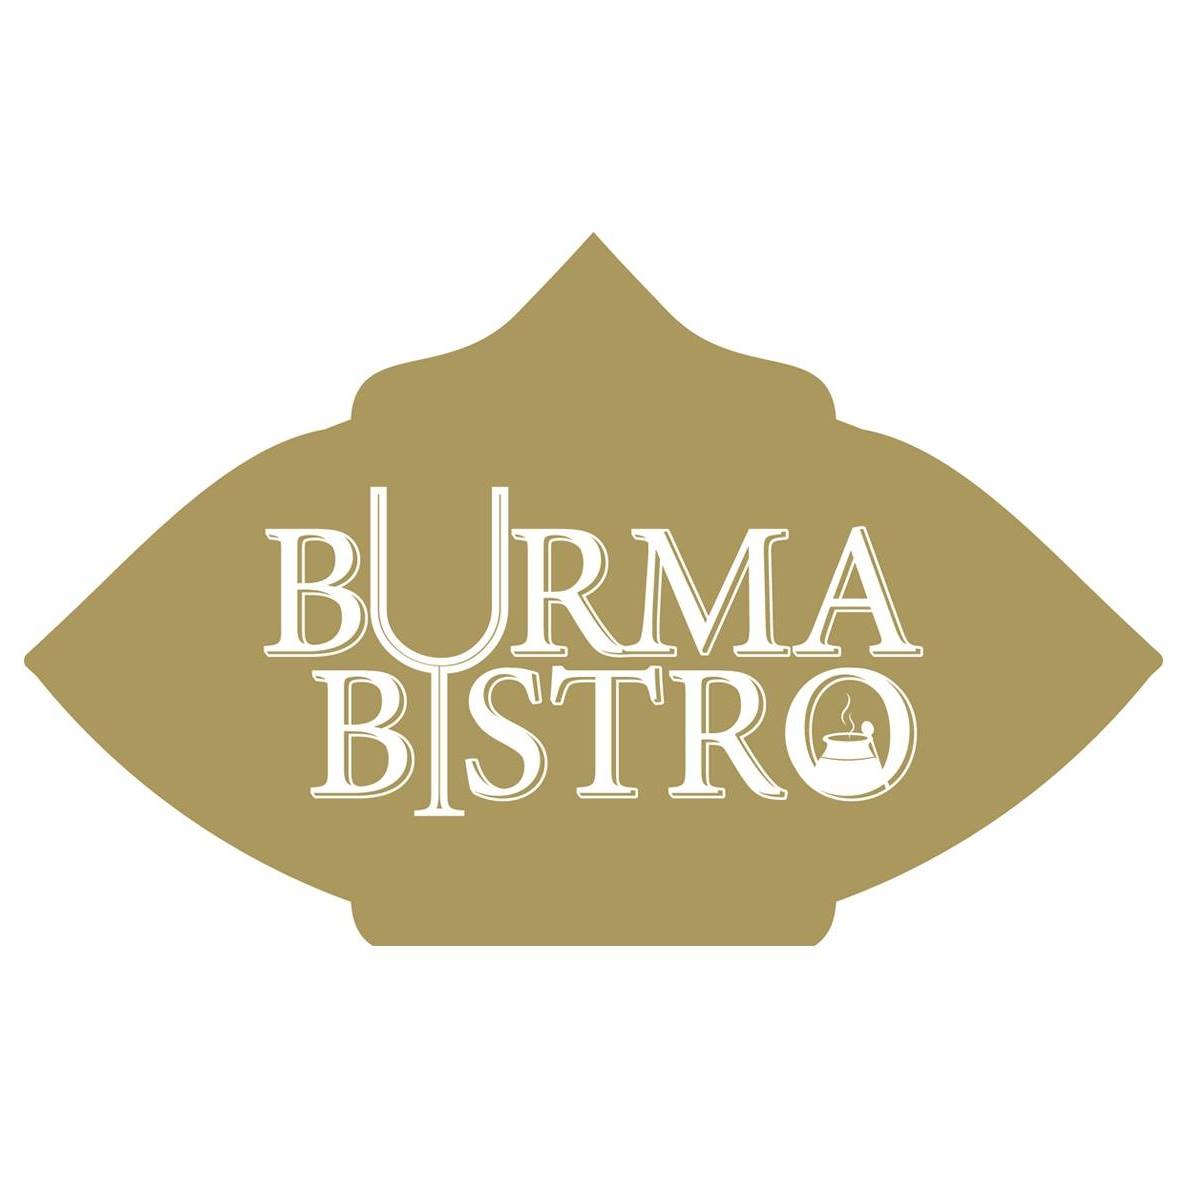 BURMA BISTRO